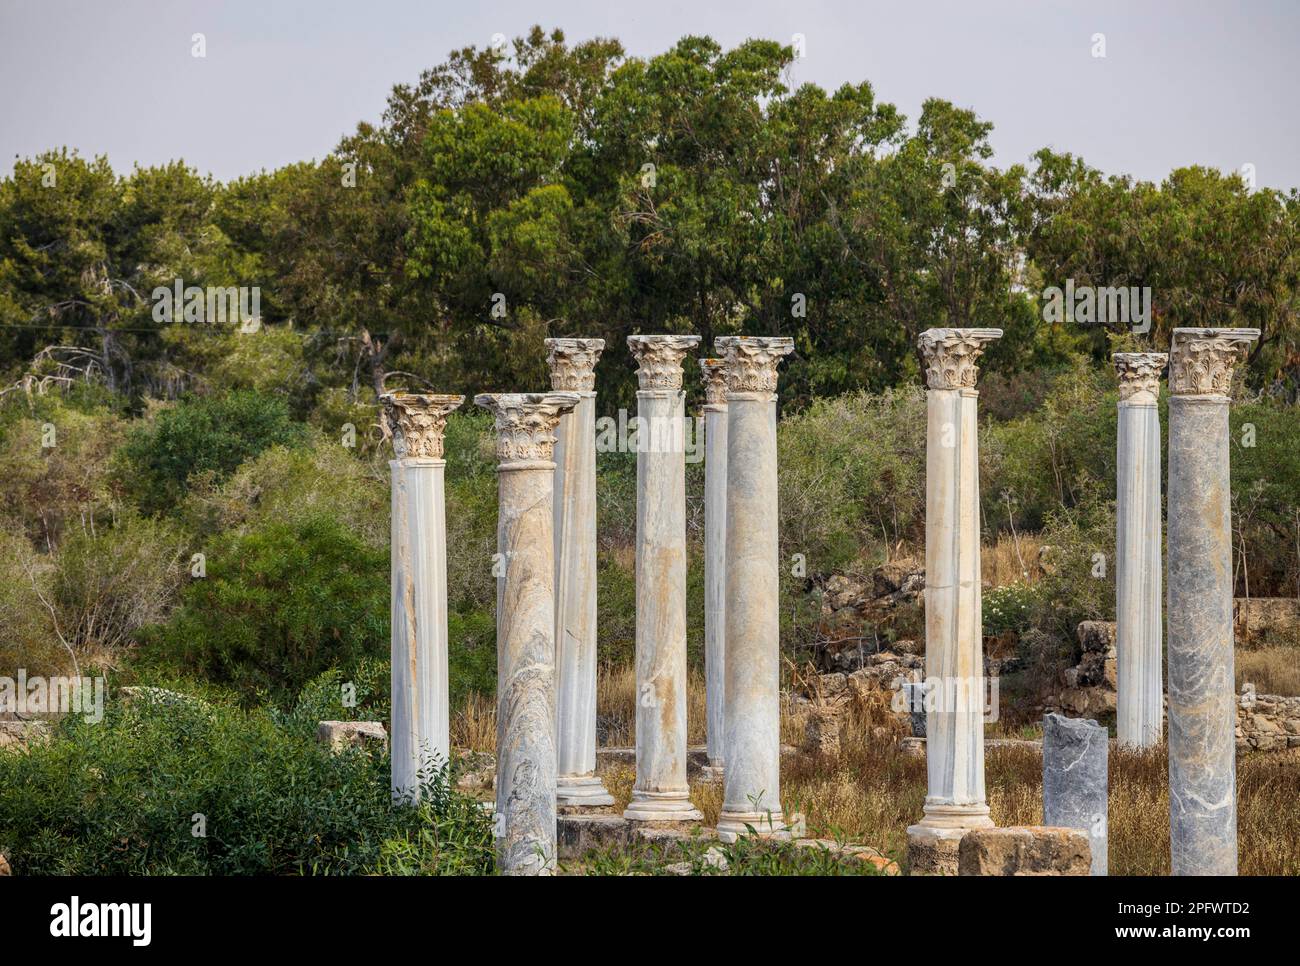 7. Juni 2022, Famagusta, Zypern: Säulen des Gymnasiums in Salamis mit mehreren römischen Bädern in der Nähe. Salamis war ein alter griechischer Stadtstaat an der Ostküste Zyperns, an der Mündung des Flusses Pedieos, nahe dem modernen Famagusta. Der Gründer von Salamis war Teucer, Sohn von Telamon, König der griechischen Insel Salamis, der nach dem Trojanischen Krieg nicht nach Hause zurückkehren konnte, weil er es versäumt hatte, seinen Bruder Ajax zu rächen. Archäologische Funde reichen bis ins 11. Jahrhundert v. Chr. zurück, späte Bronzezeit. Das „Kulturzentrum“ Salamis während der Römerzeit hat ein Gymnasium, Theater, Amphitheater, Stadion und Stockfoto